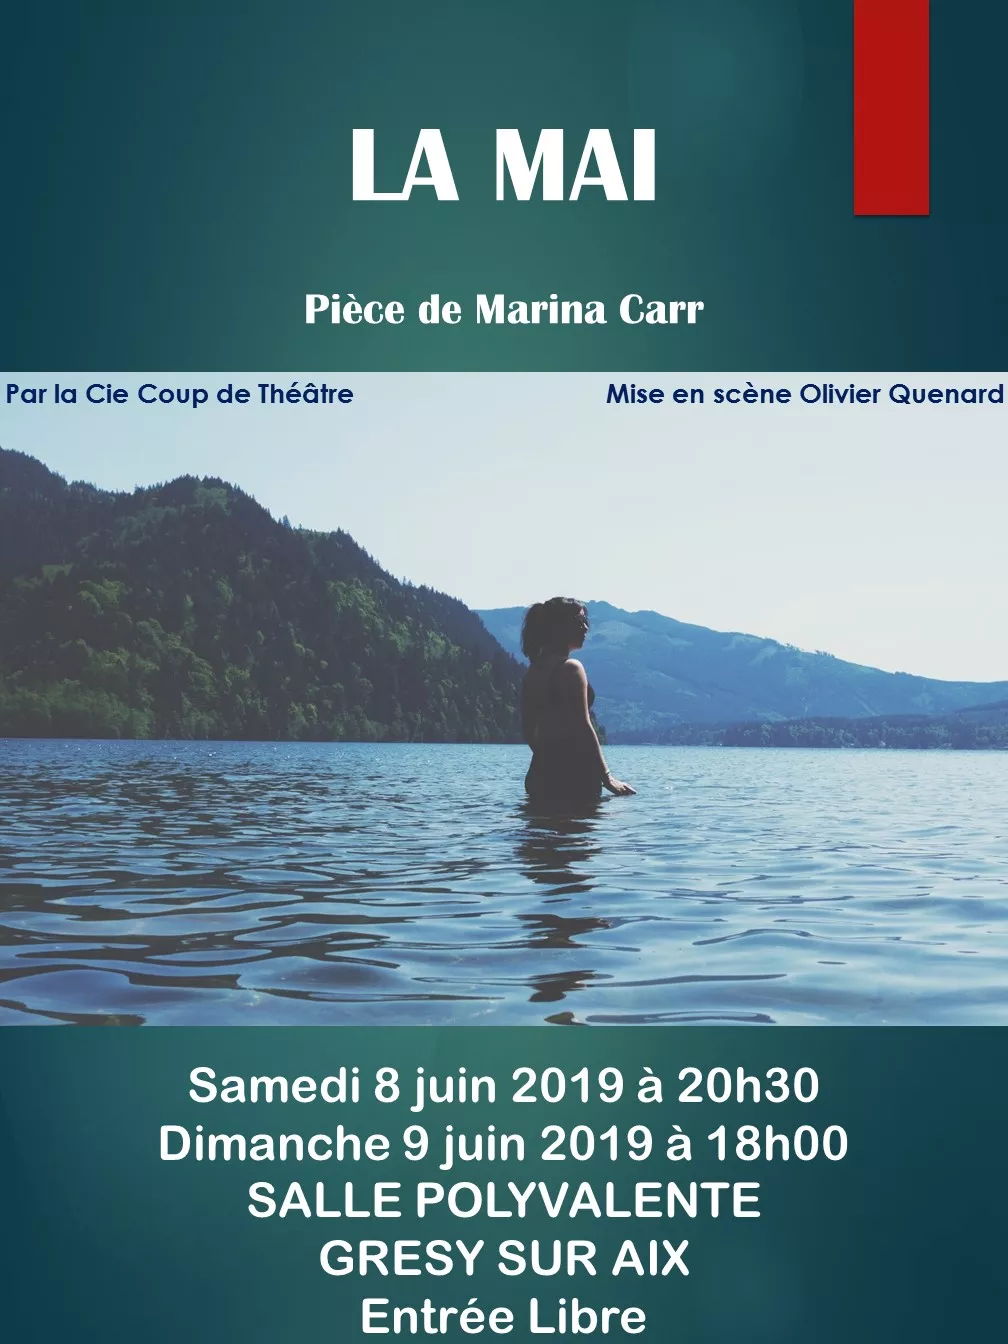 Représentations Théâtre "La mai" de Marina Carr les 8 et 9 juin à Grésy sur Aix